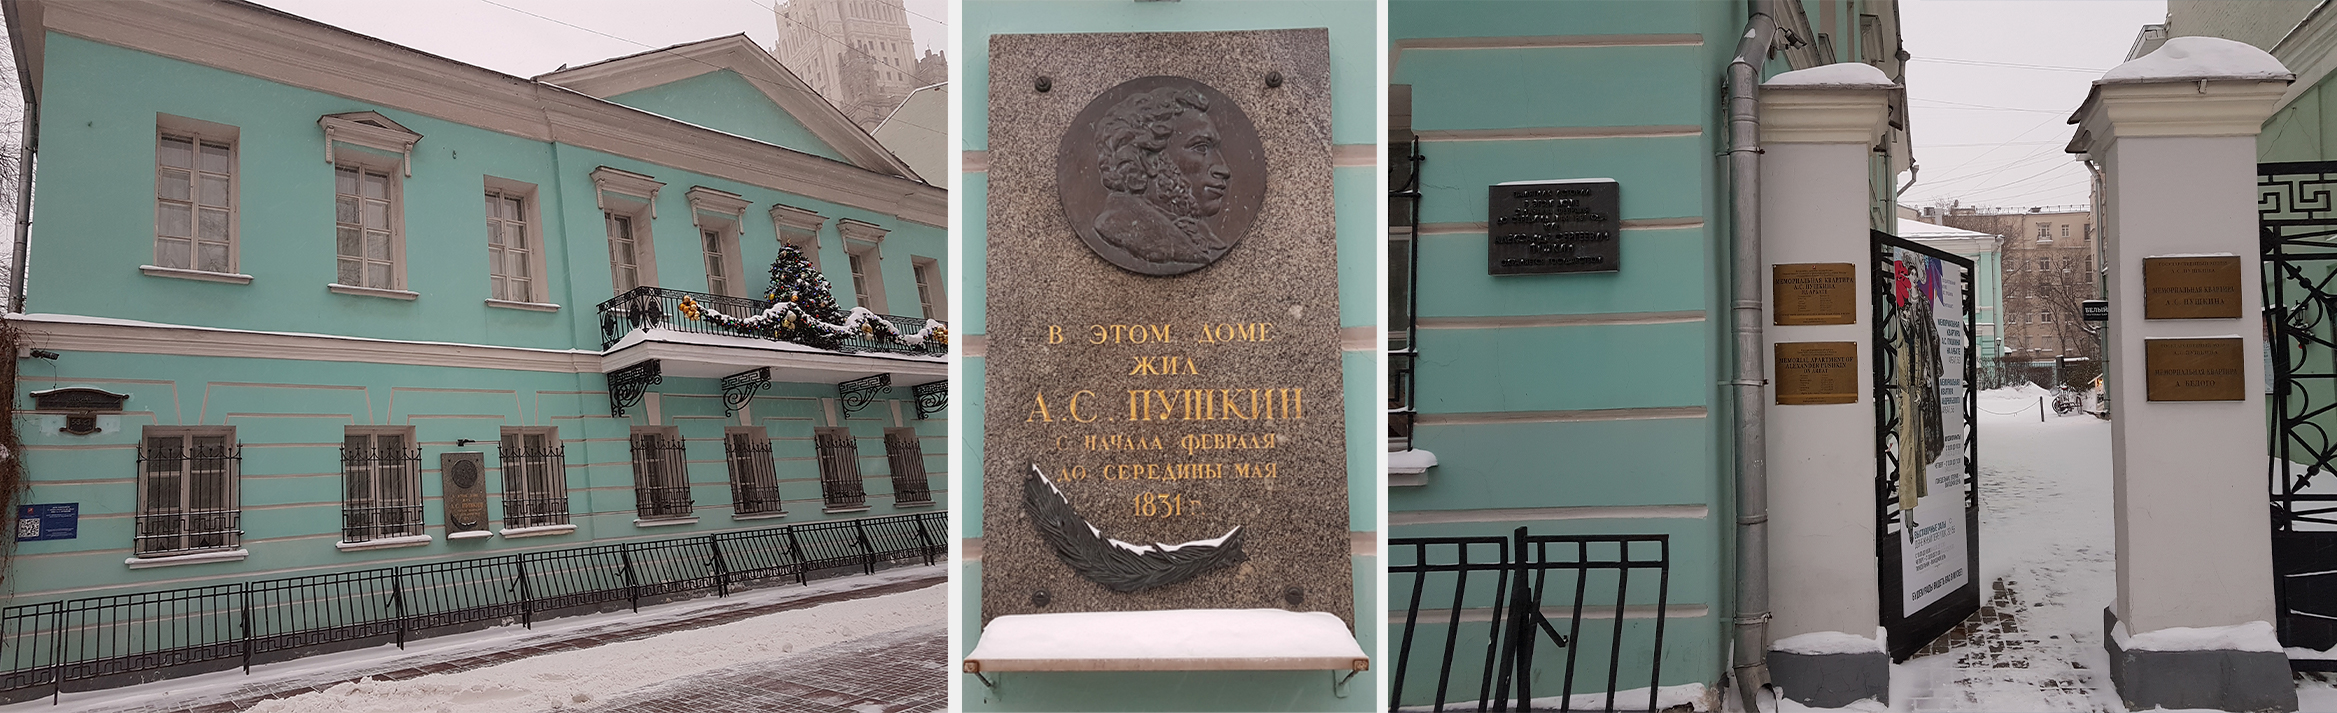 Так выглядит на Арбате музей-квартира Пушкина и мемориальная квартира Андрея Белого снаружи (дом, табличка и вход).